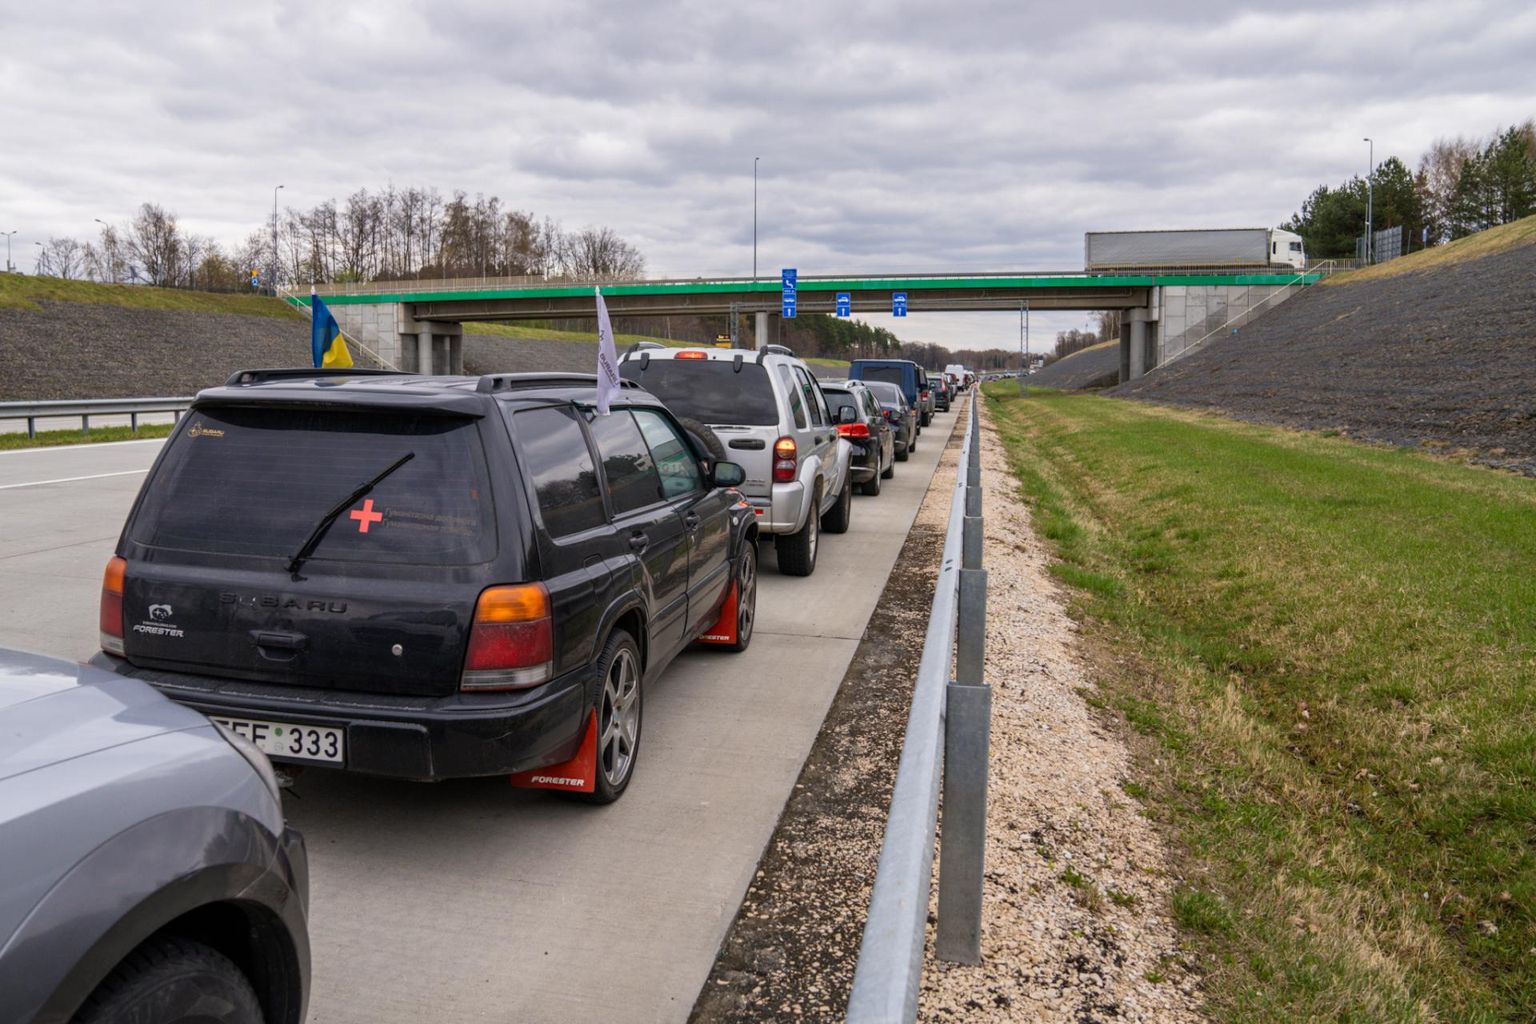 Korczowa valico di frontiera in Polonia verso l'Ucraina.